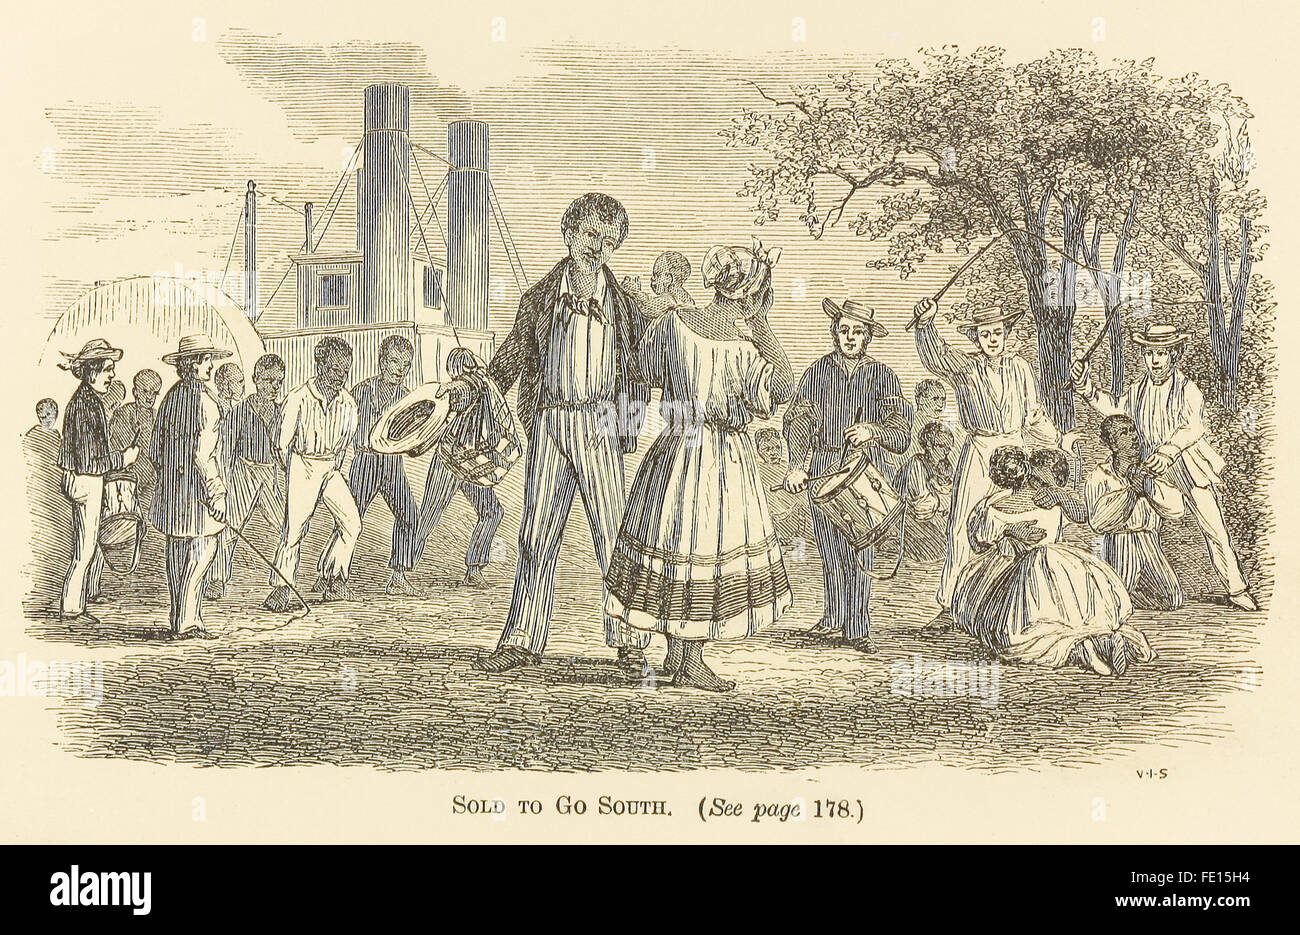 "Verkauft, um Süden gehen" von "The unterdrückt Buch über Sklaverei!" von George W. Carleton, Kupferstich von Van Ingen & Snyder. Siehe Beschreibung für mehr Informationen. Stockfoto